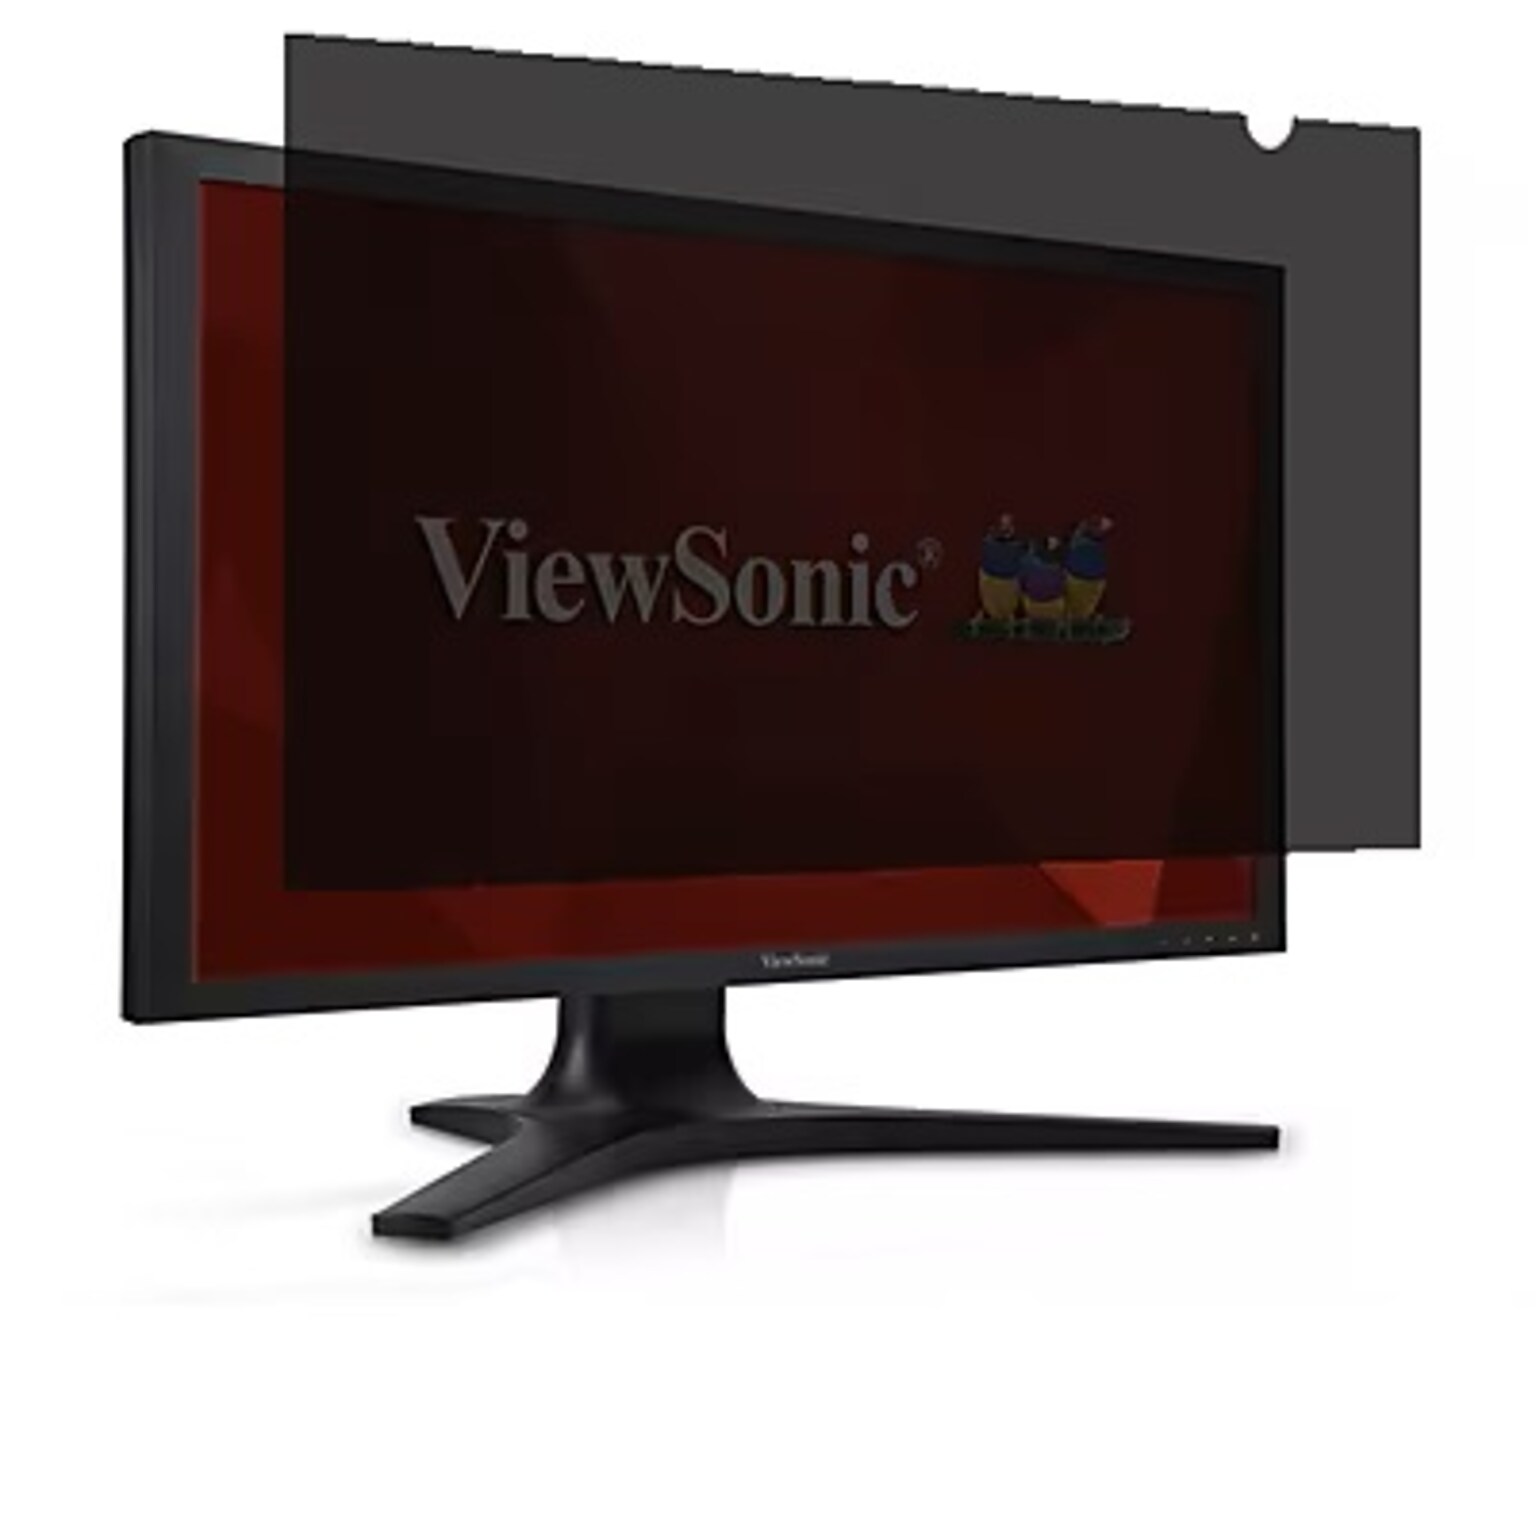 ViewSonic Anti-Glare Privacy Filter for 23 Widescreen Monitor (16:9) (VSPF2380)